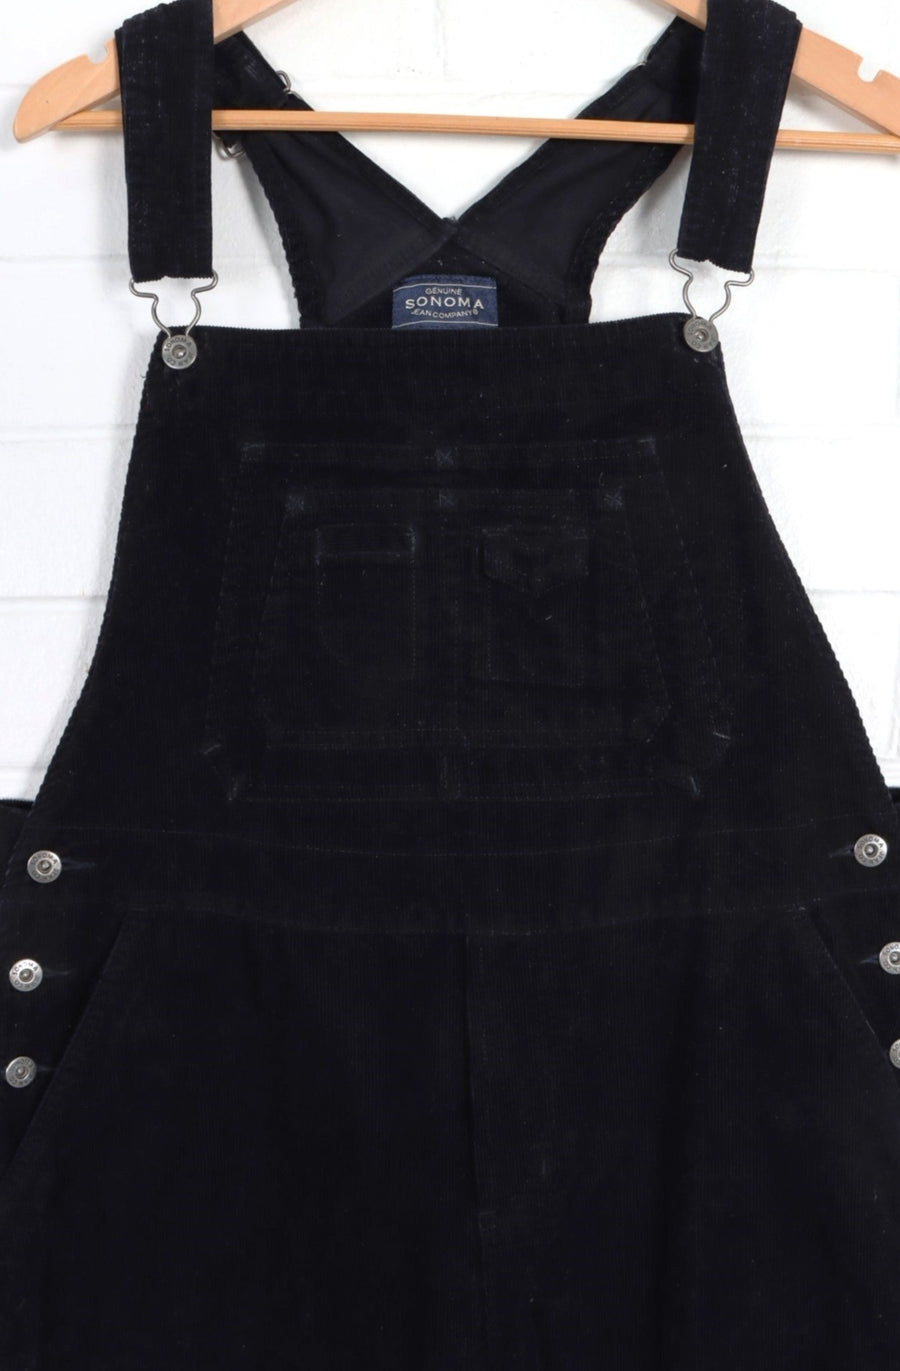 Black Multi Pocket Long Corduroy Overalls (L) - Vintage Sole Melbourne